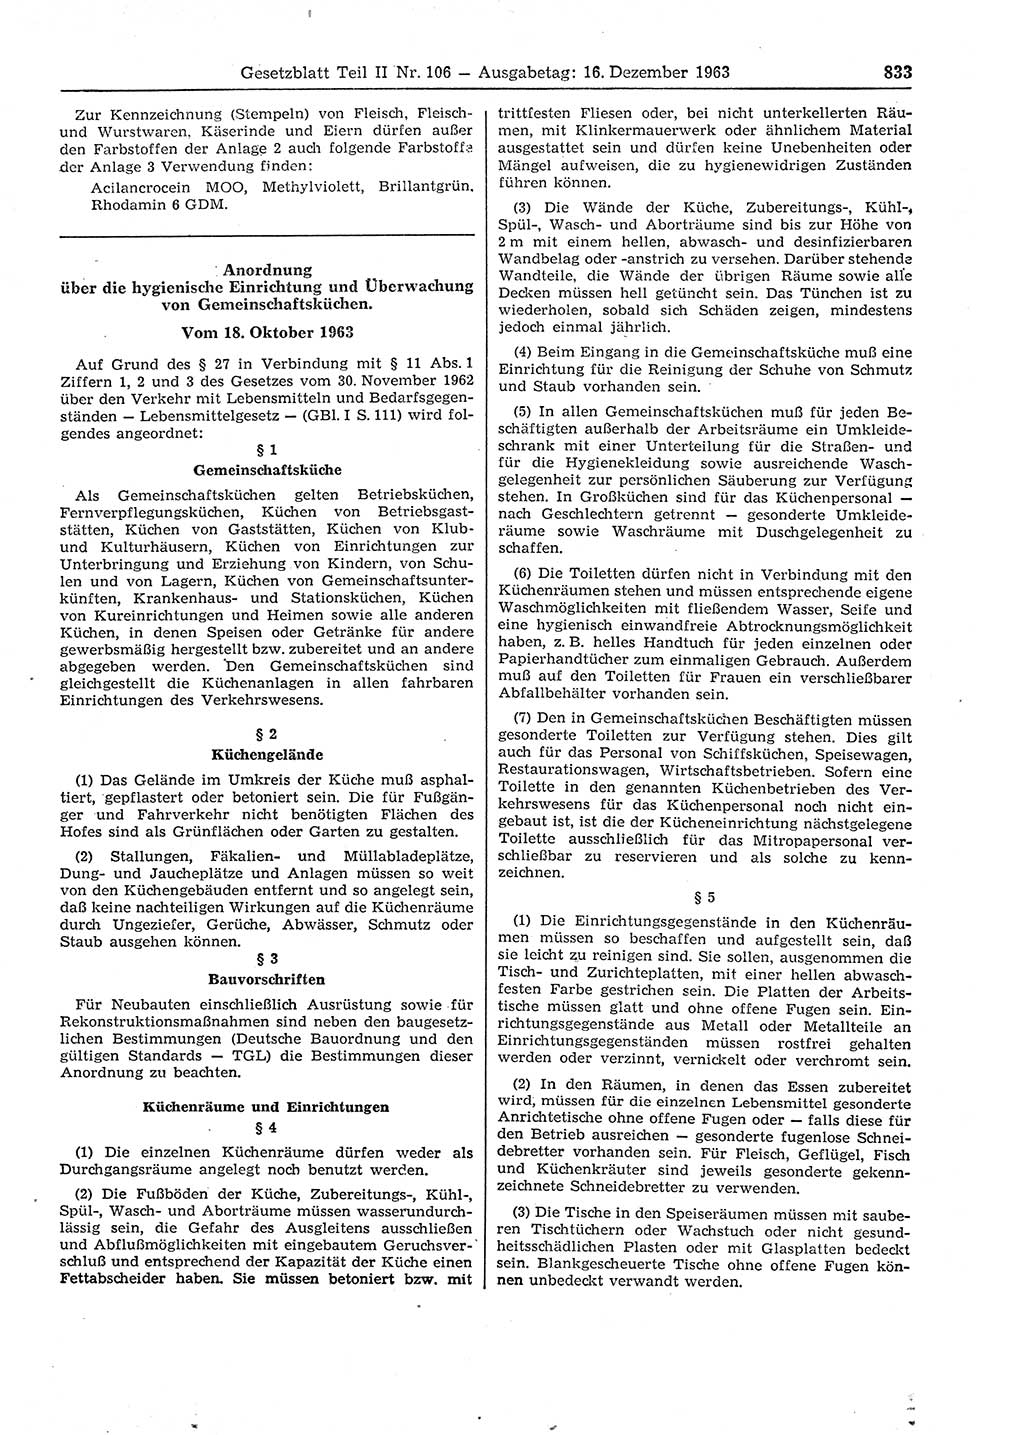 Gesetzblatt (GBl.) der Deutschen Demokratischen Republik (DDR) Teil ⅠⅠ 1963, Seite 833 (GBl. DDR ⅠⅠ 1963, S. 833)